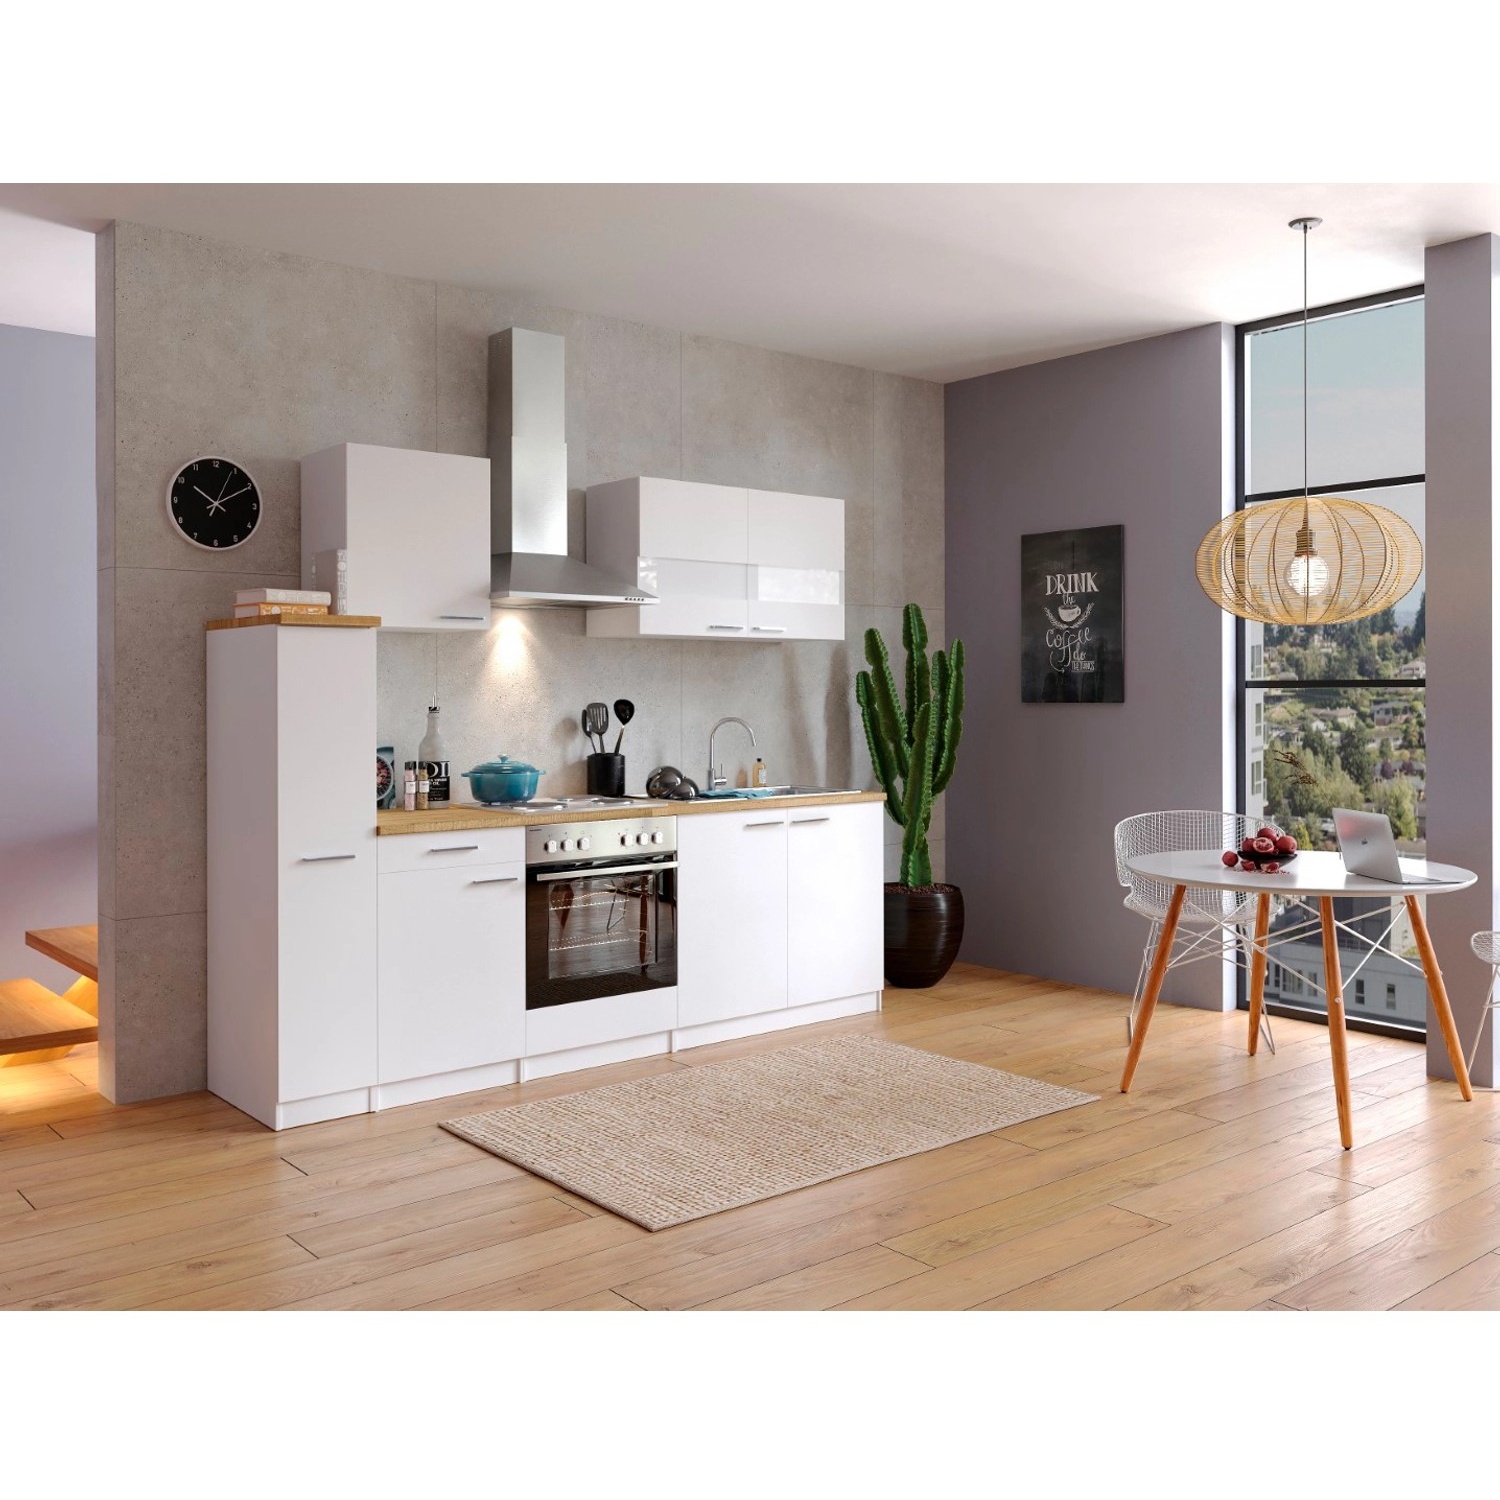 Bild von Küchenzeile Malia 240 cm E-Geräte Kochmulde weiß